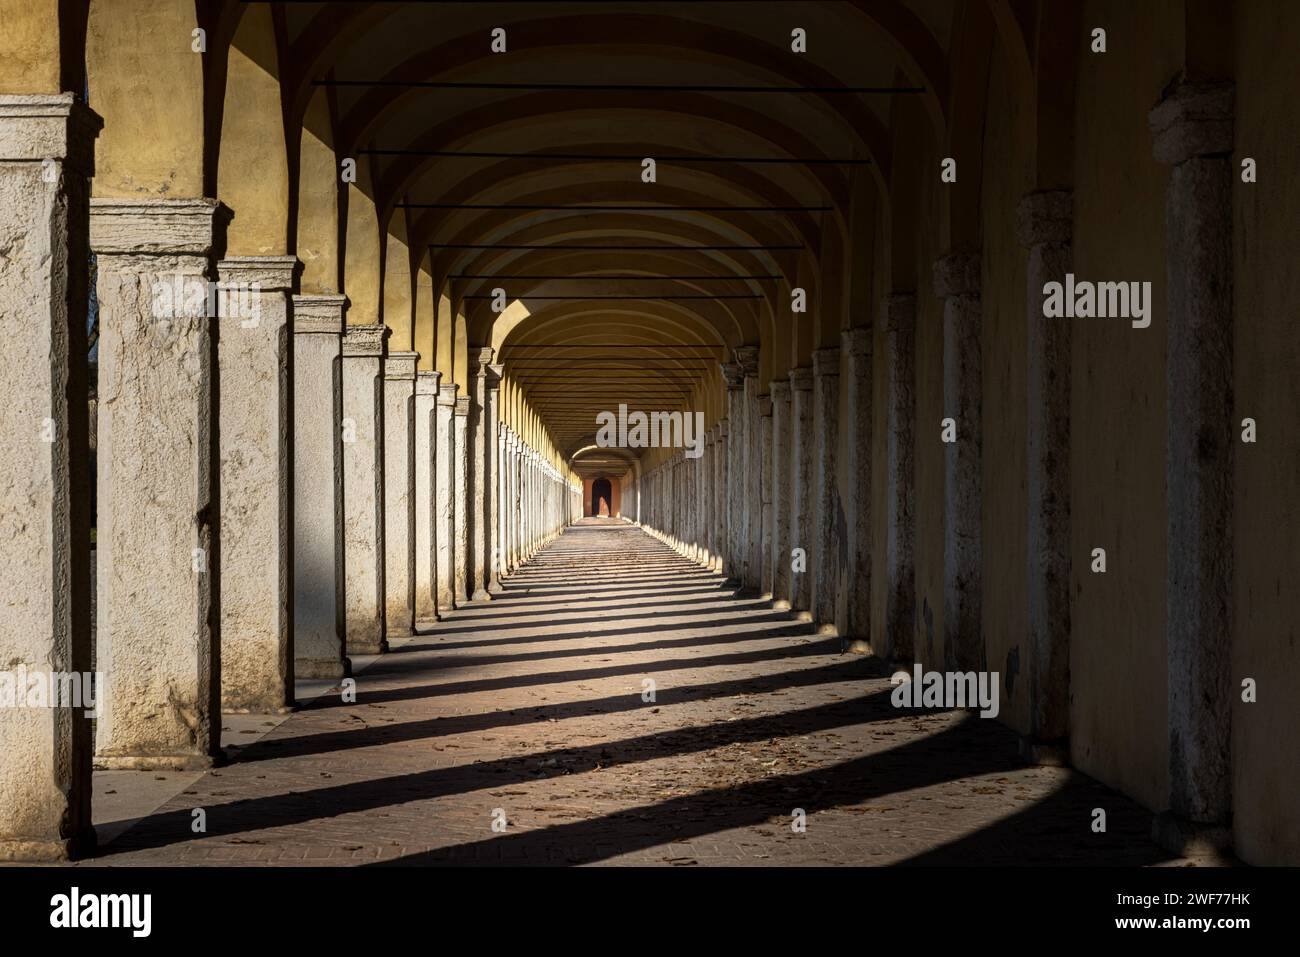 Die Stadt Comacchio im venezianischen Stil mit ihren Kanälen und Brücken in der Provinz Ferrara, Emilia-Romagna, Italien. Stockfoto